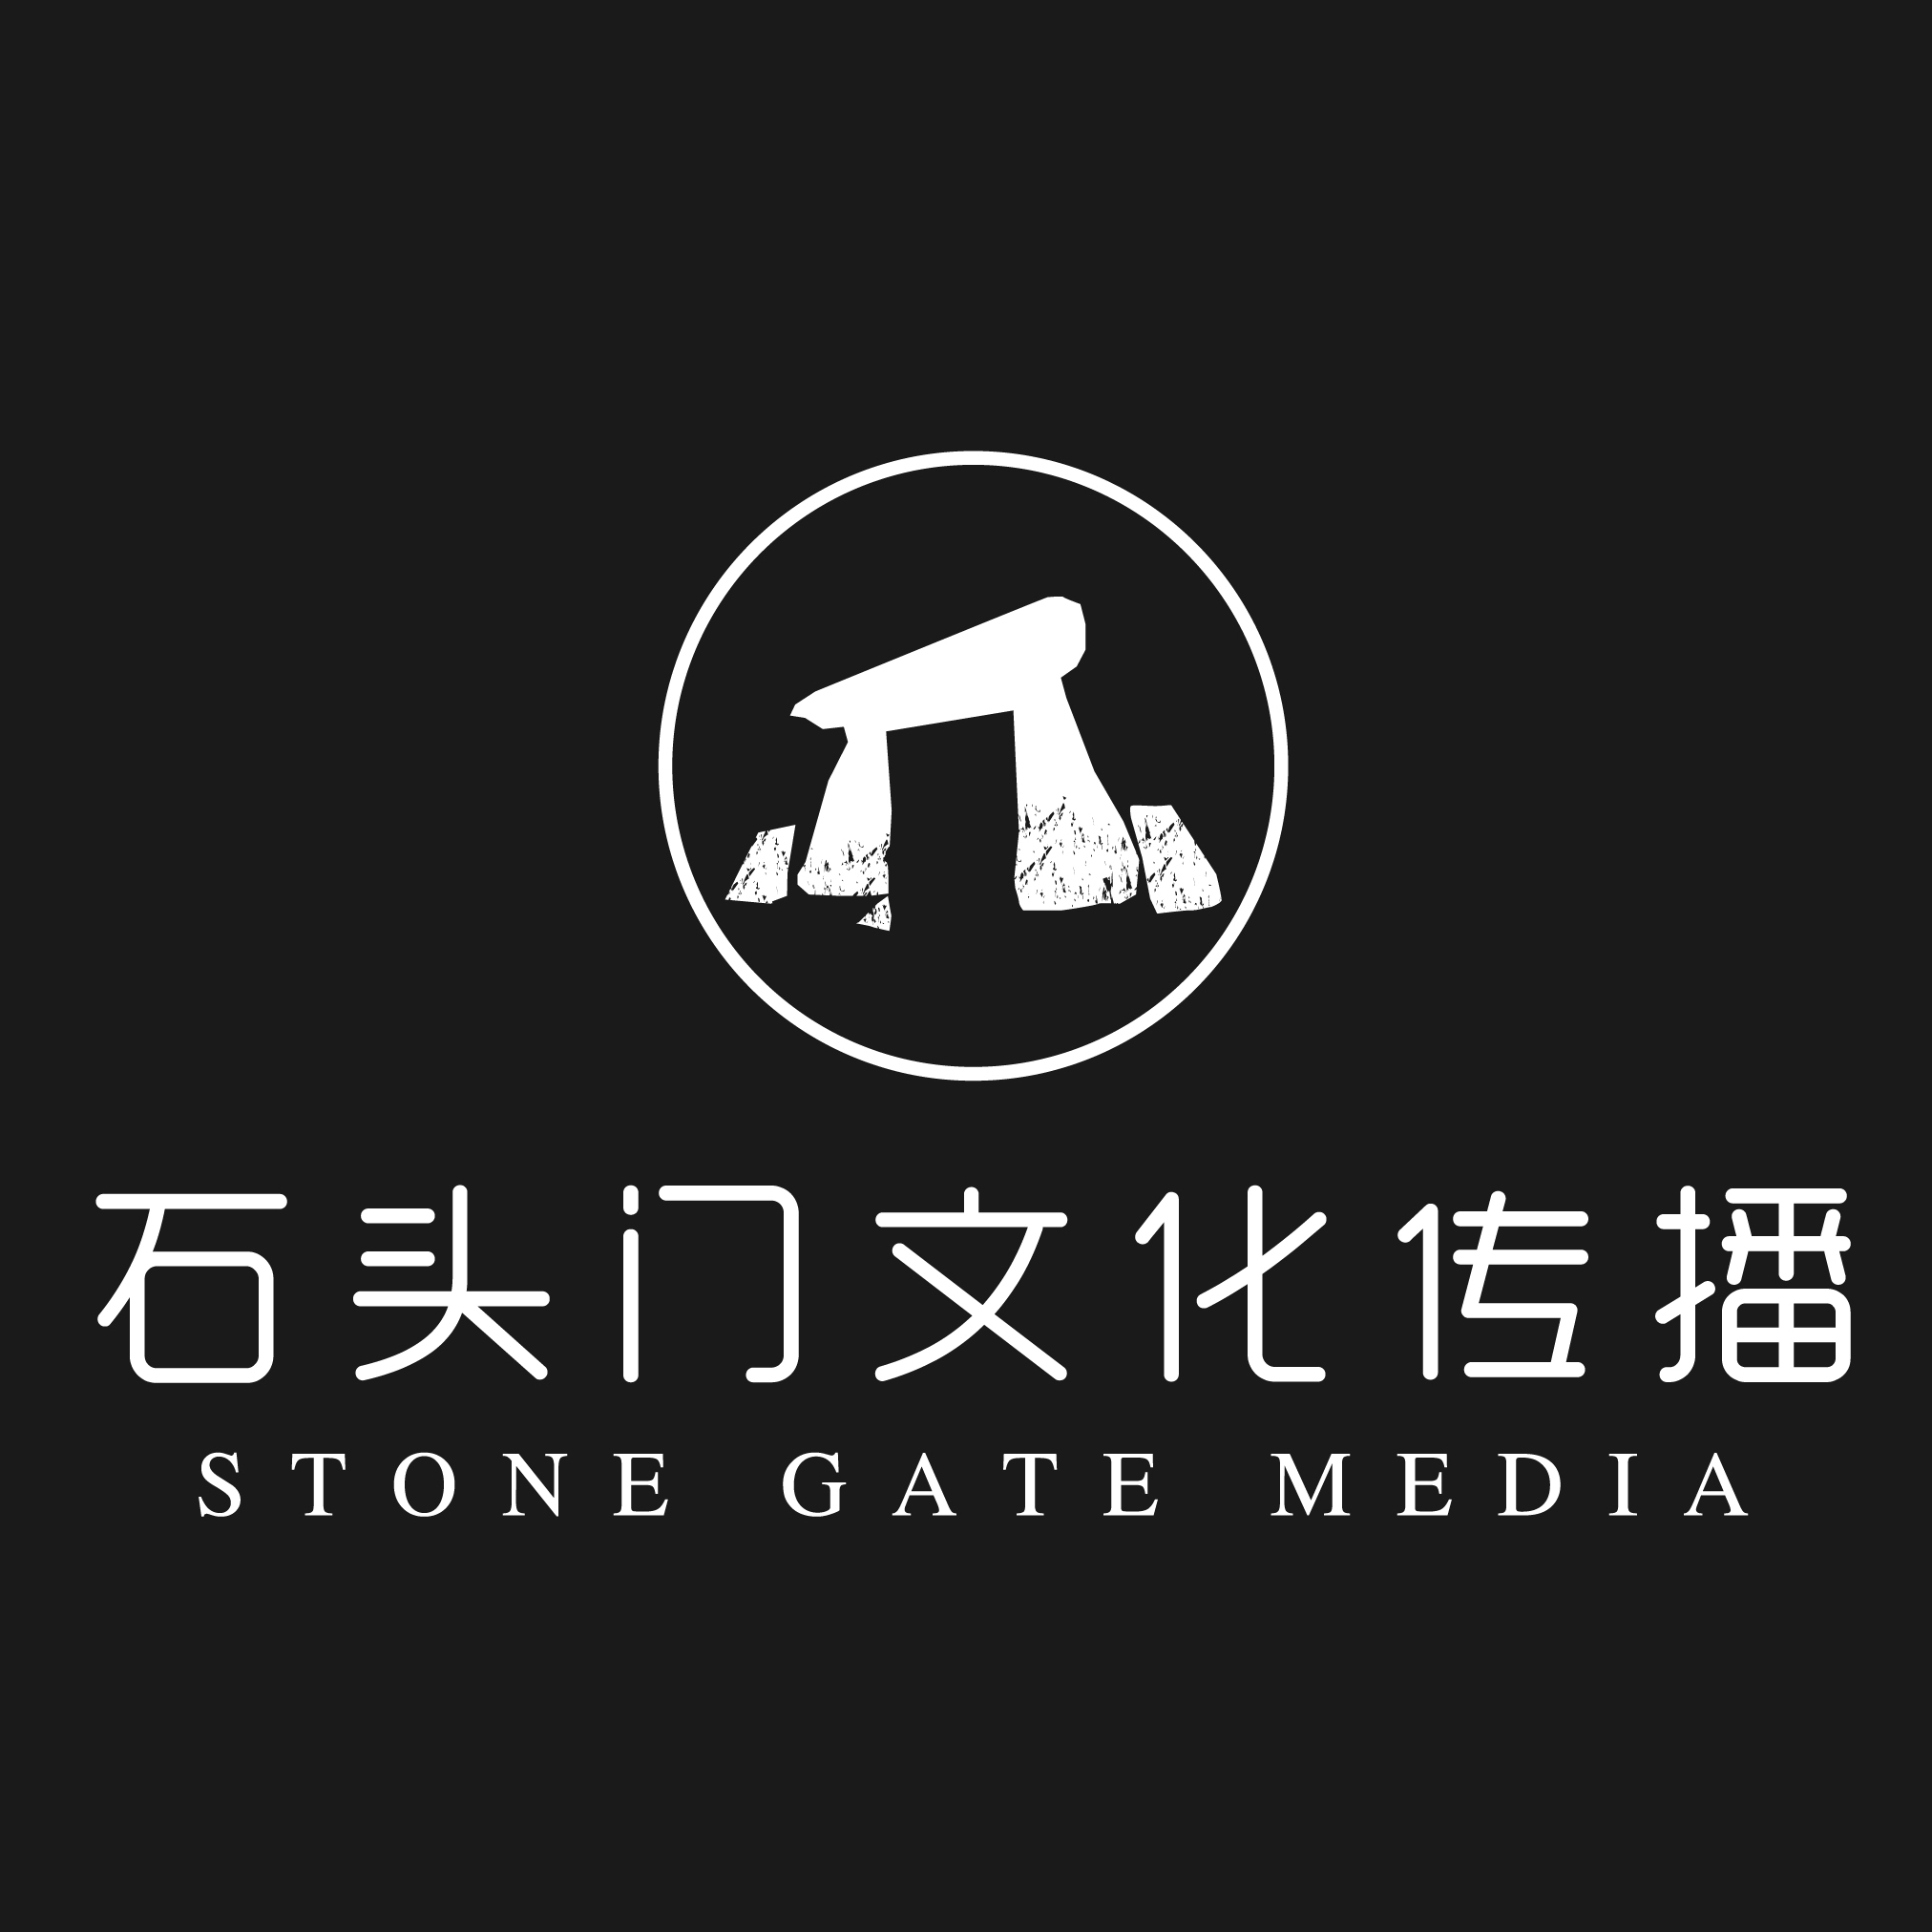 北京石头门文化传播有限公司